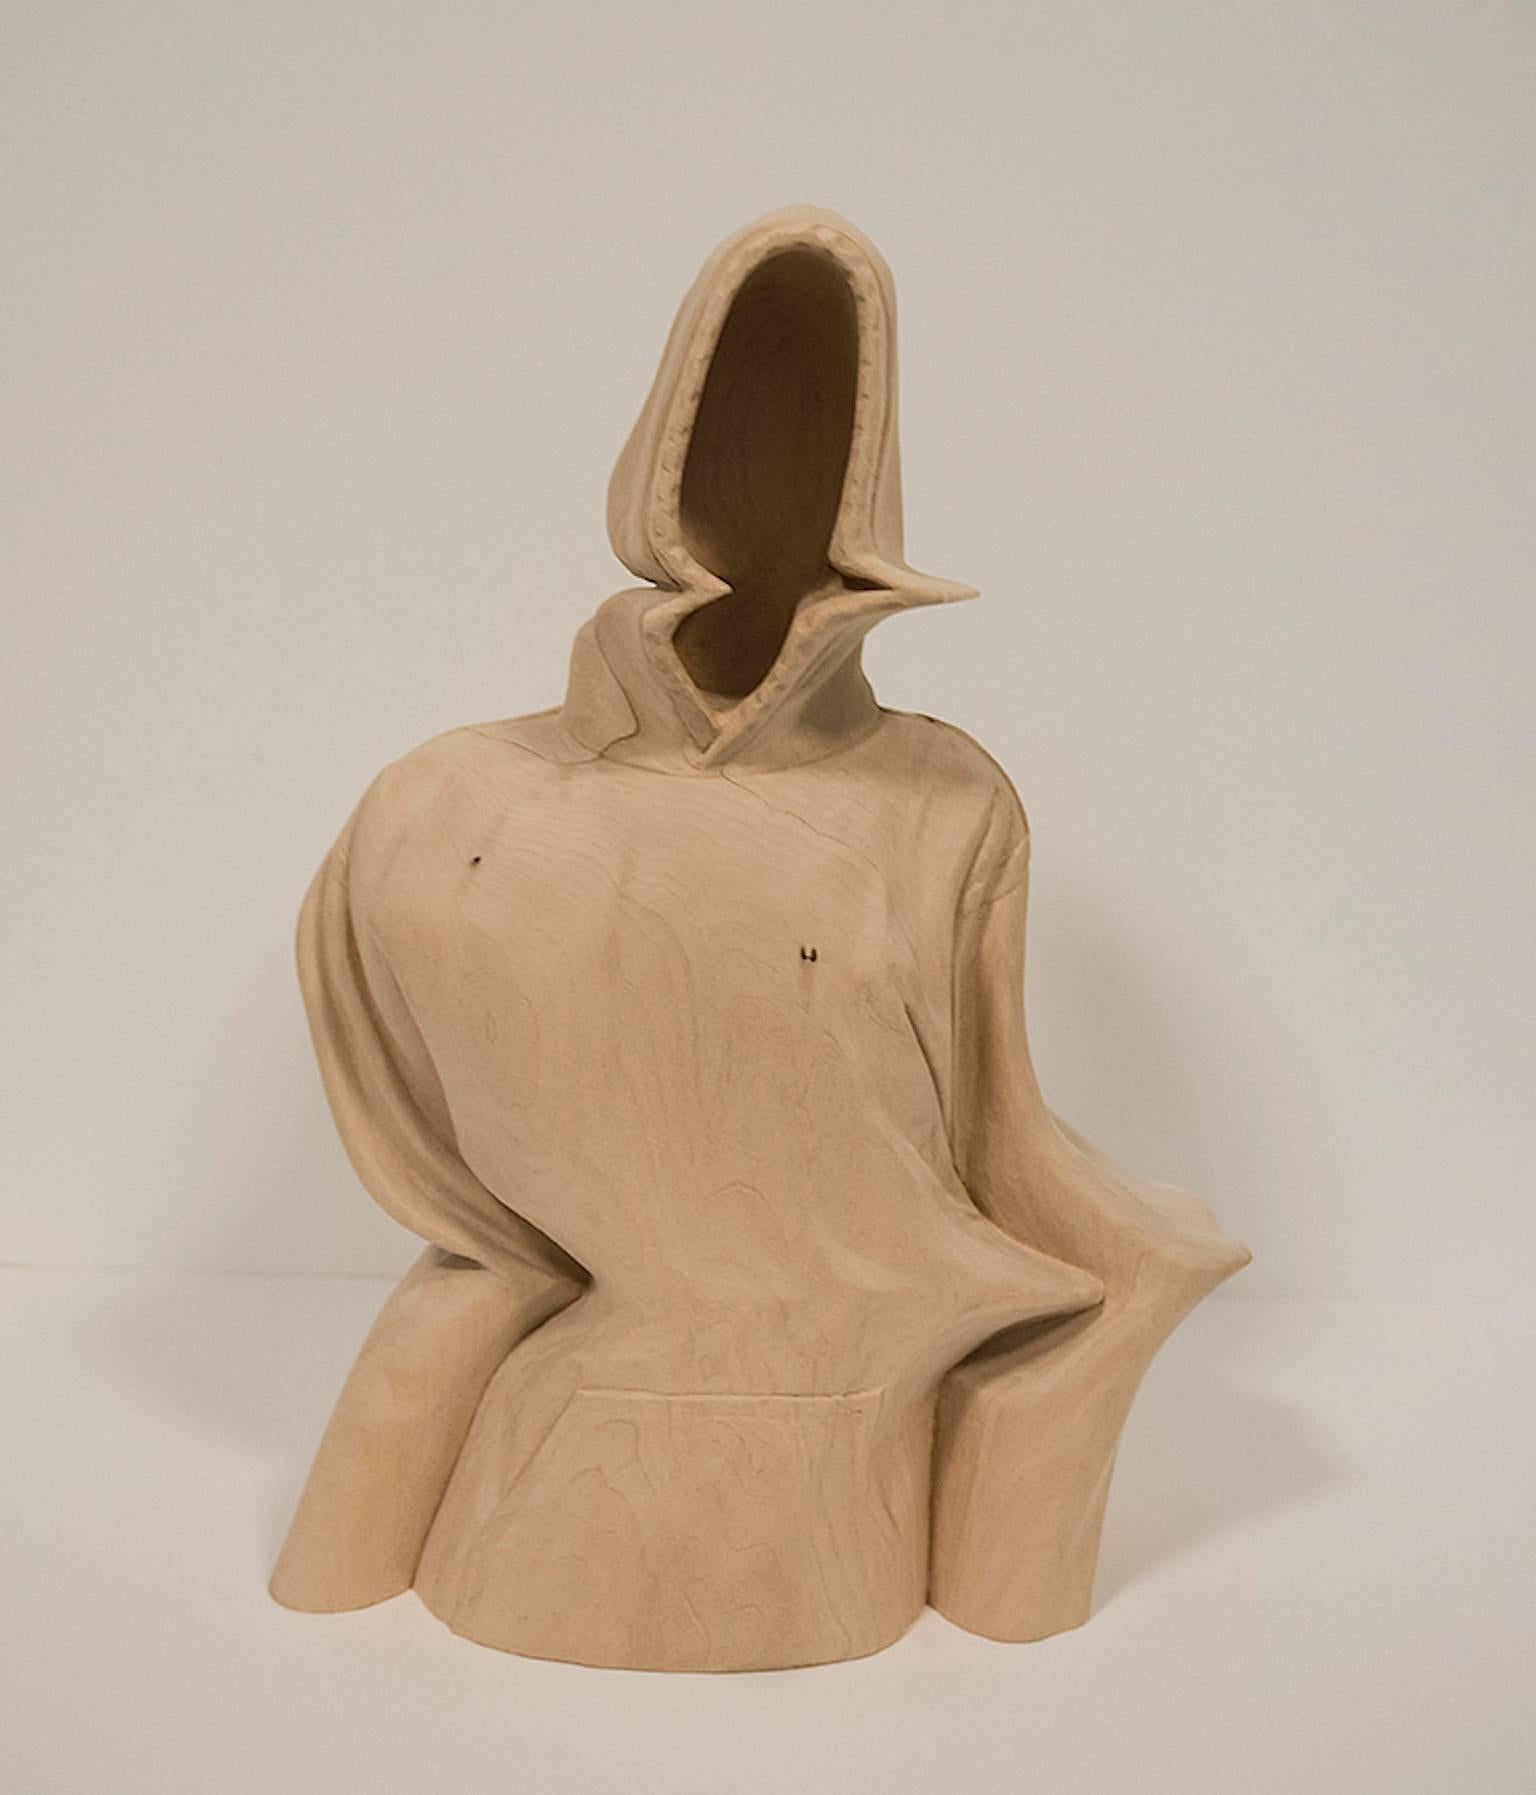 Paul Kaptein Figurative Sculpture – "Stumme" handgeschnitzte Holzskulptur, zeitgenössisch, figurativ, surrealistisch